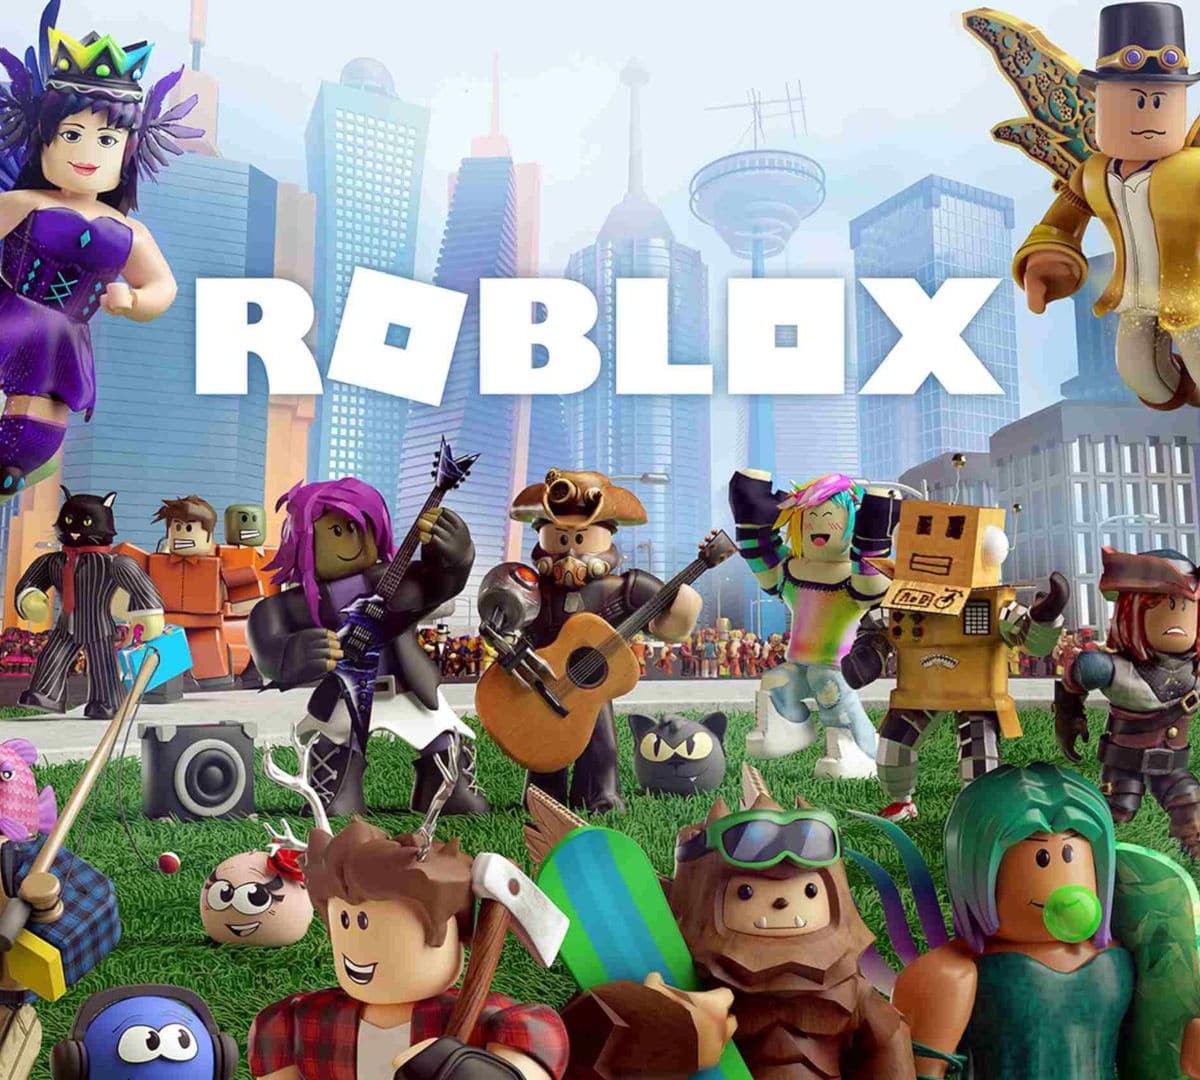 PlayStation bloqueou lançamento de Roblox por preocupações com crianças -  Adrenaline